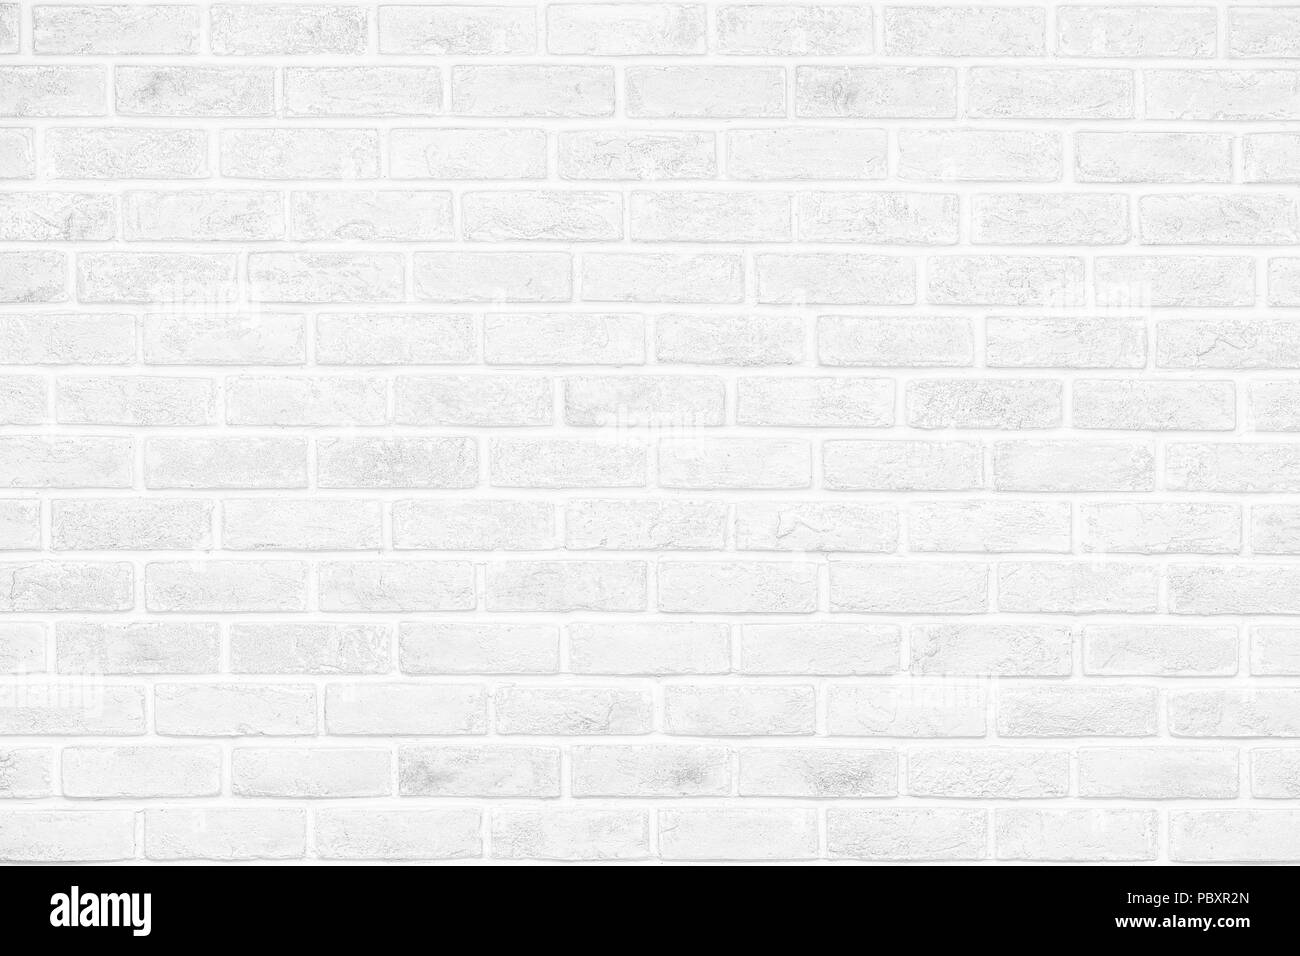 Bạn đang tìm kiếm hình nền đơn giản nhưng có sức hút để trang trí tường nhà? Hãy xem qua hình nền tường gạch trắng trống này. Hình ảnh chất lượng cao và độ phân giải lớn sẽ giúp bức tường của bạn sáng bóng và mới mẻ hơn bao giờ hết.